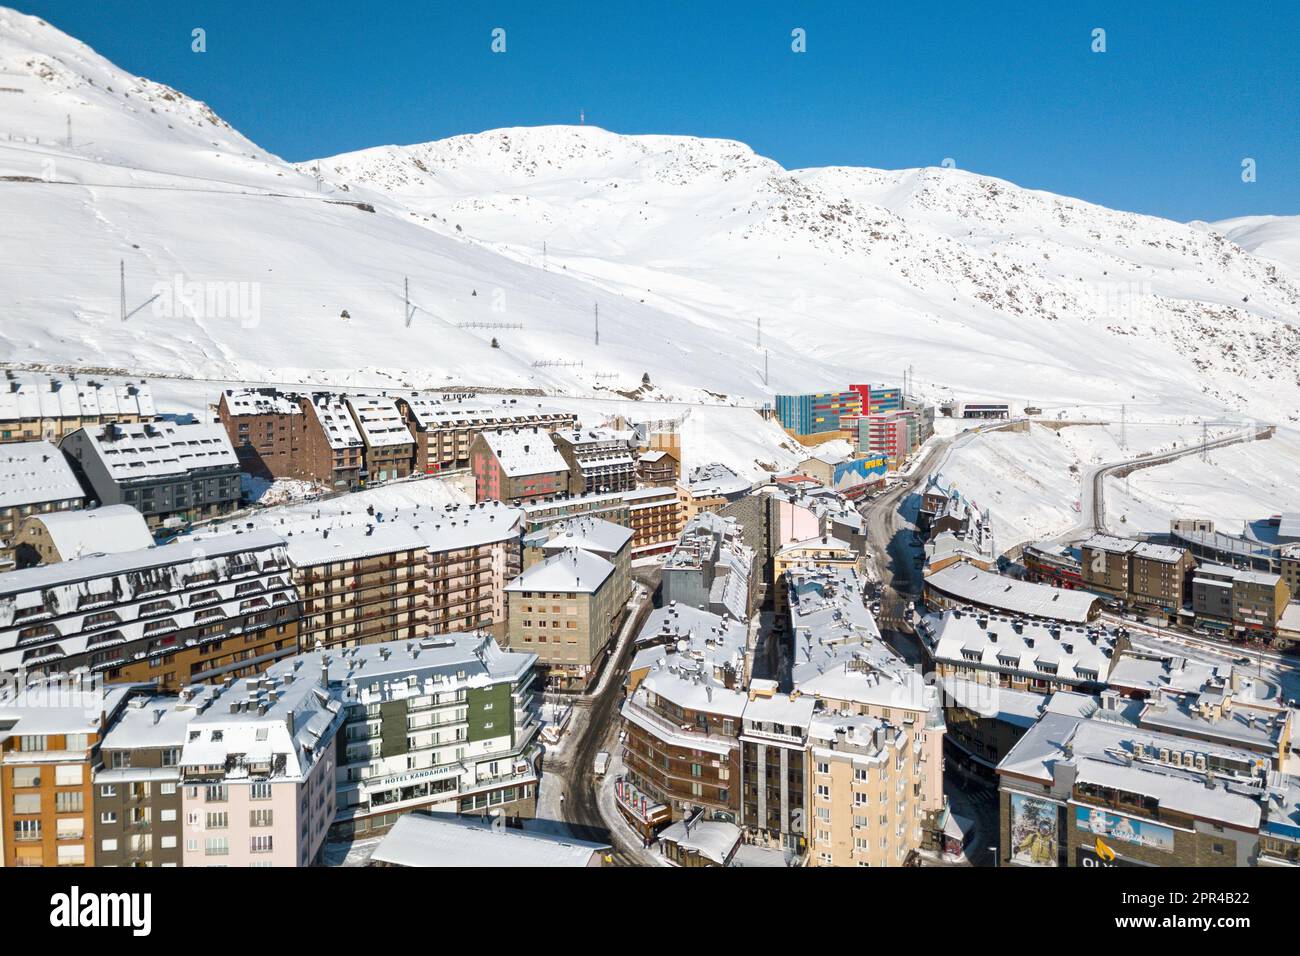 Pas de la Casa, Andorre - 15 novembre 2019: Vue aérienne de pas de la Casa, une ville andorrane à la frontière française, connue pour ses boutiques hors taxes et elle Banque D'Images